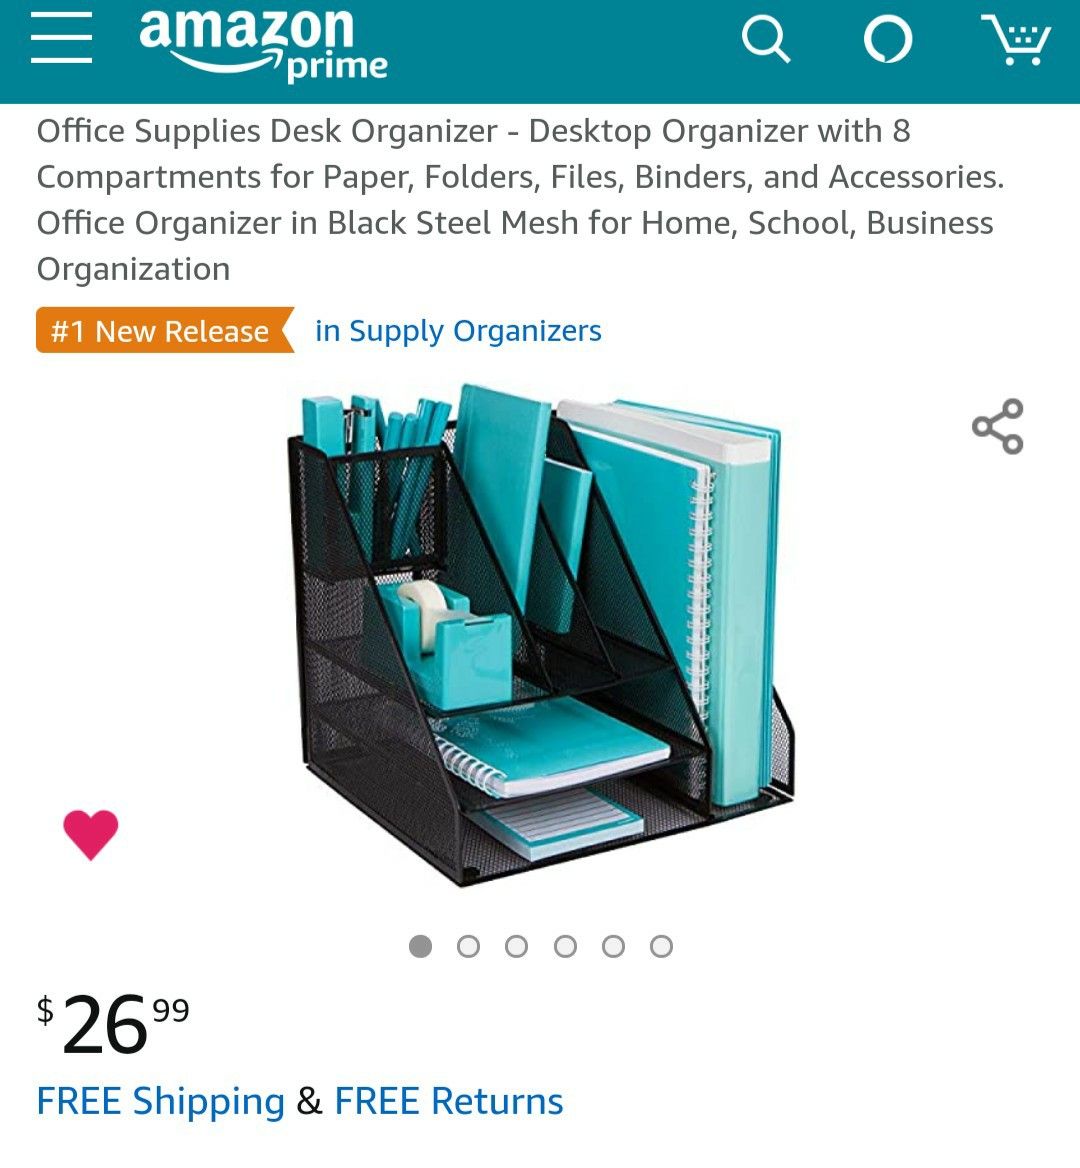 Office Supplies Desk Organizer - Desktop Organizer with 8 Compartments